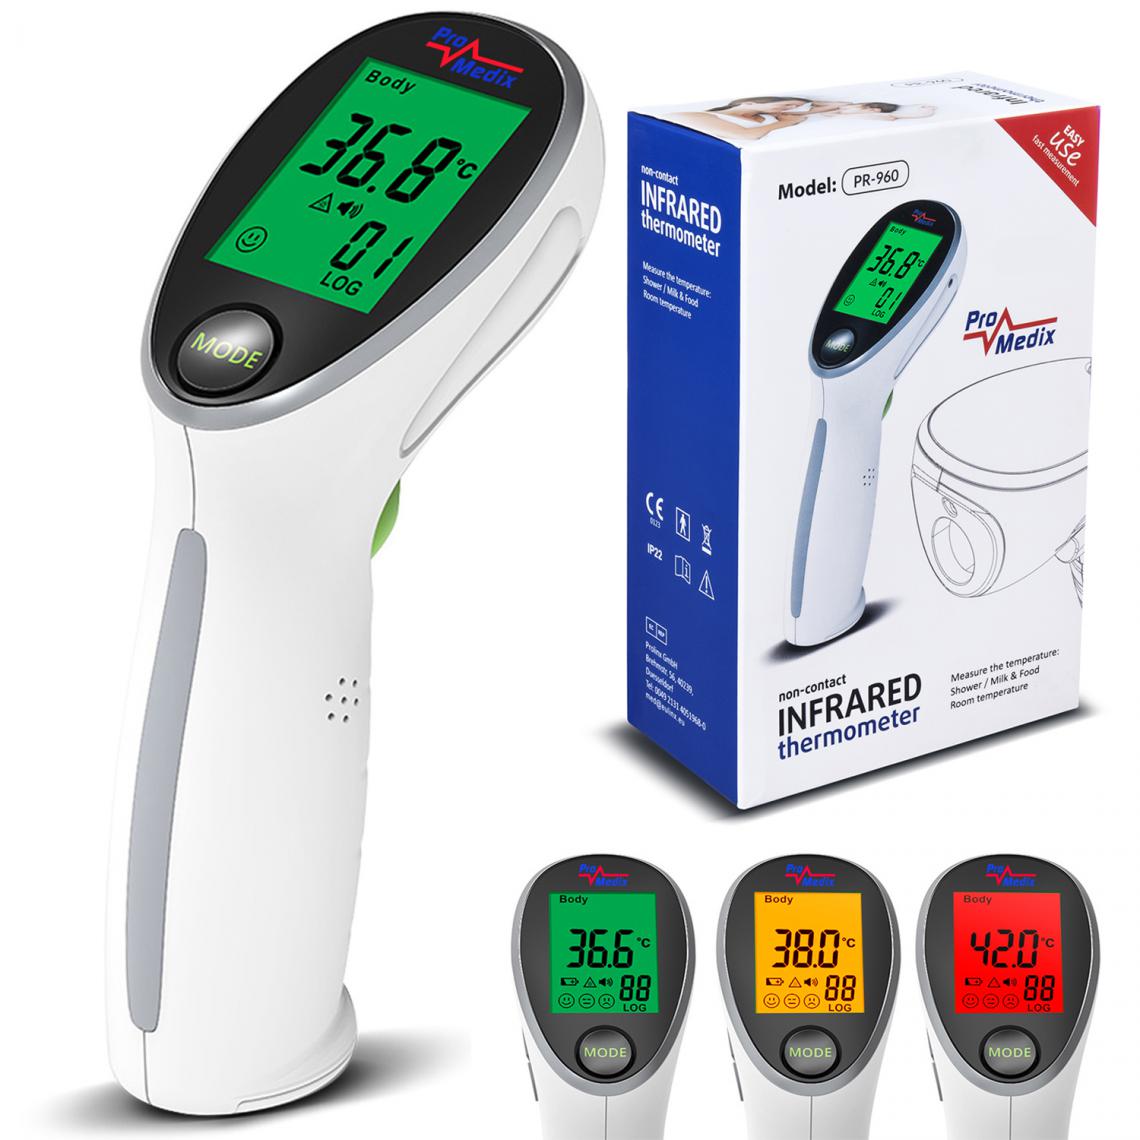 Promedix - Thermomètre médical infrarouge sans contact Promedix PR-960 - Thermomètre connecté